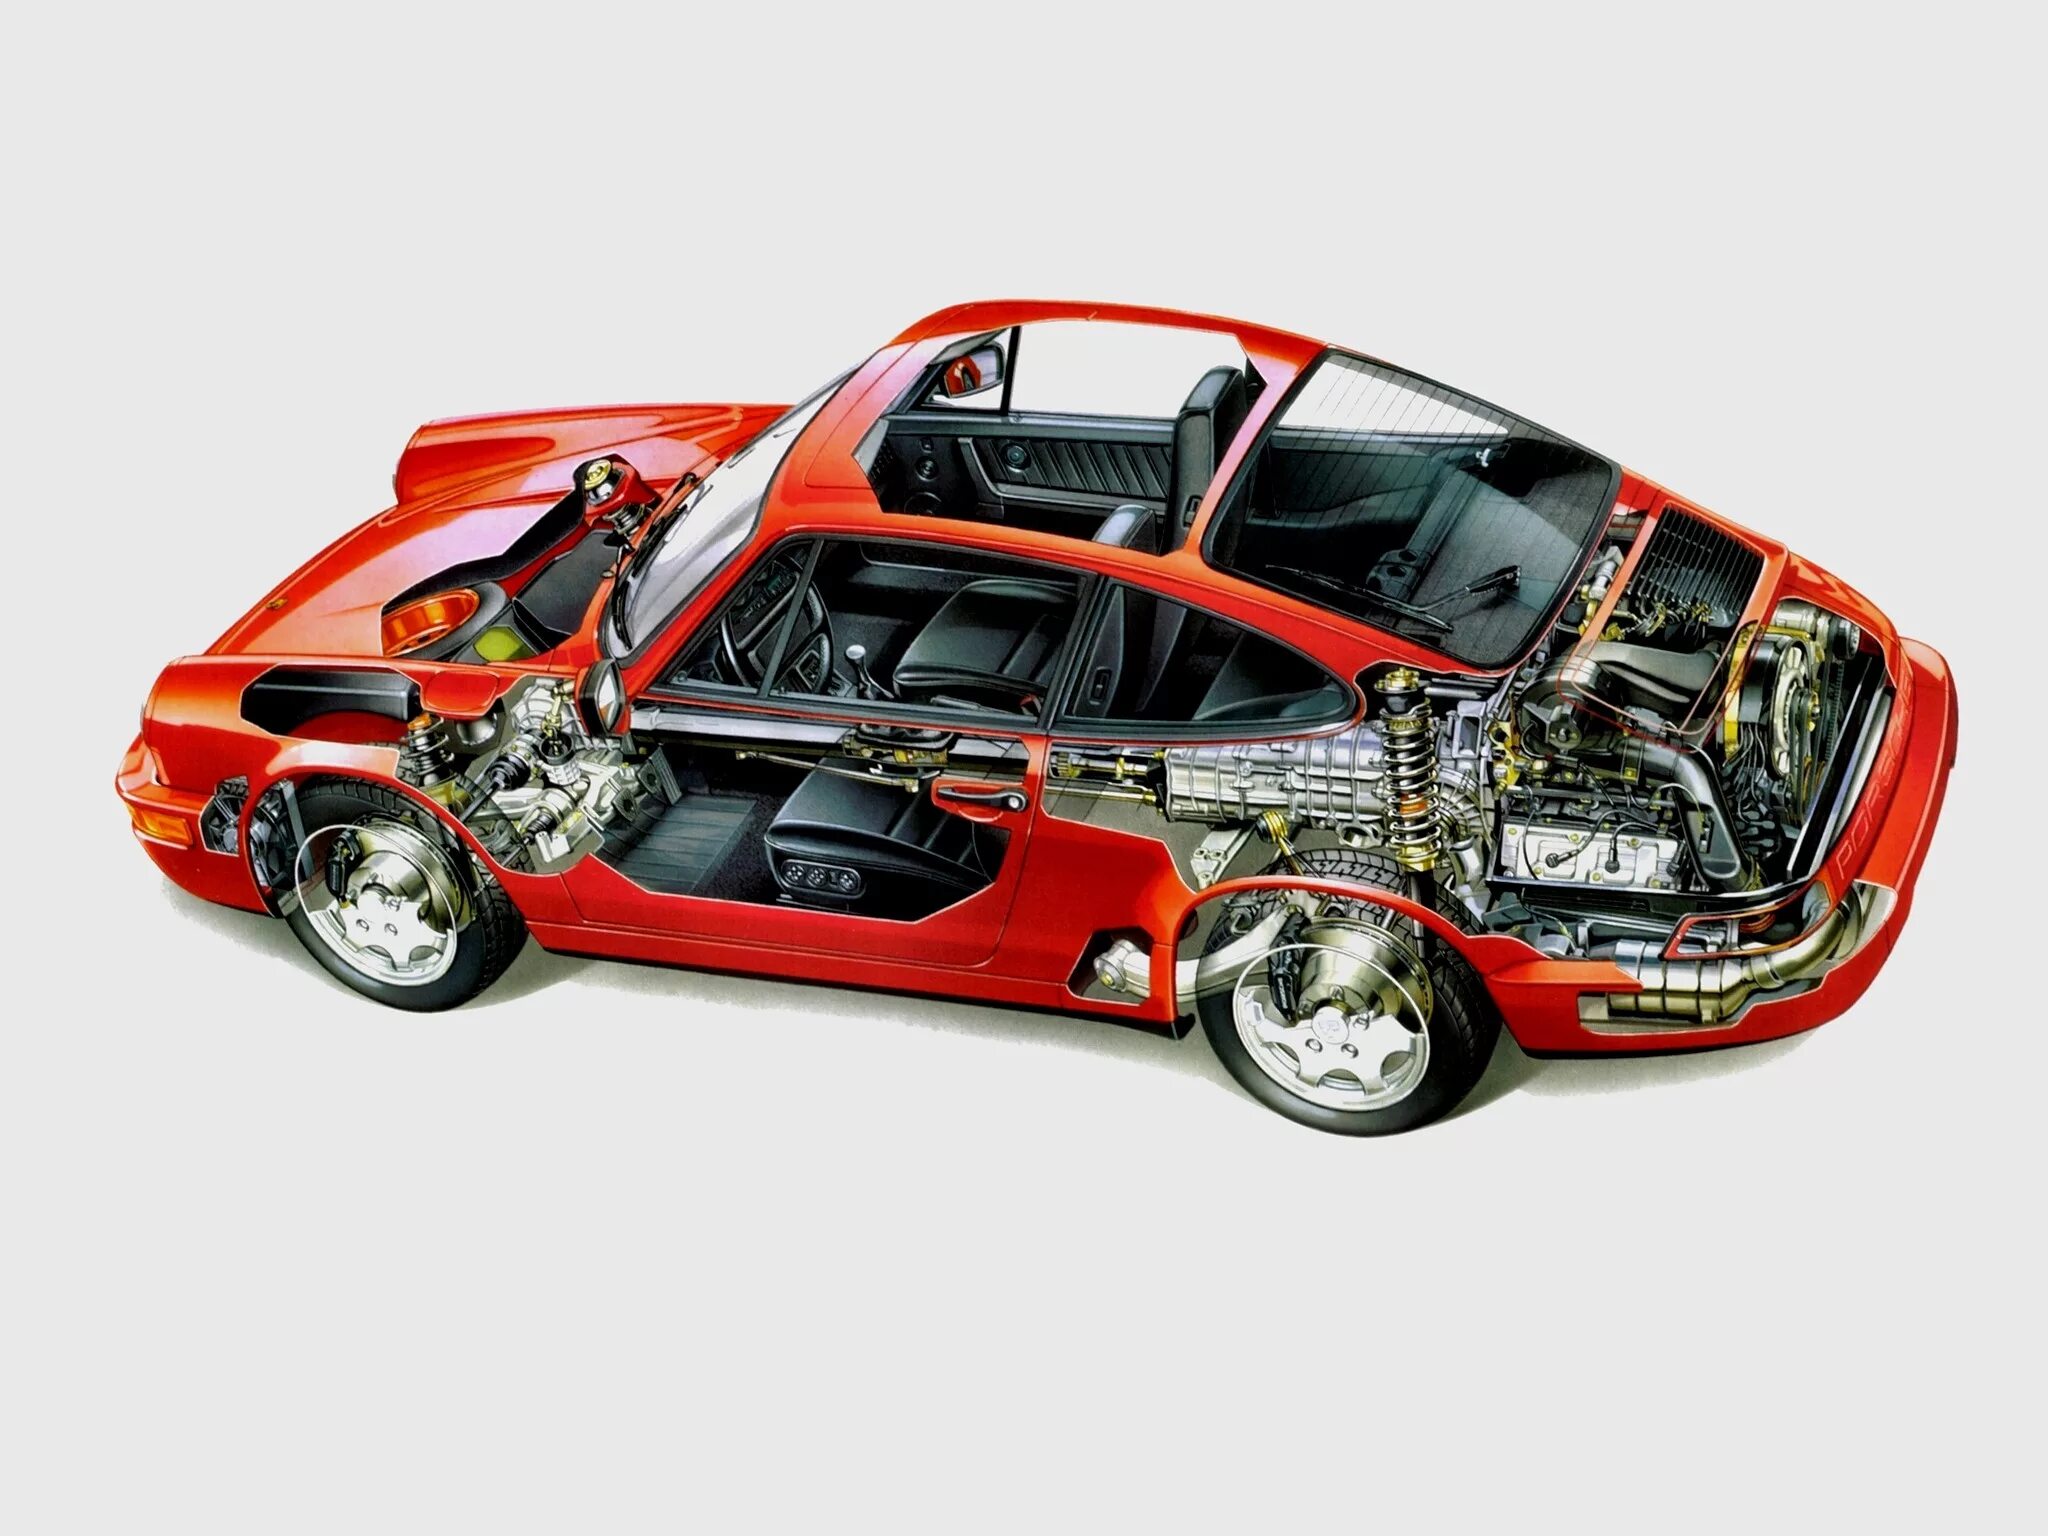 Porsche 911 Carrera 964. Двигатель Porsche 911 Carrera. Порше 911 расположение мотора.